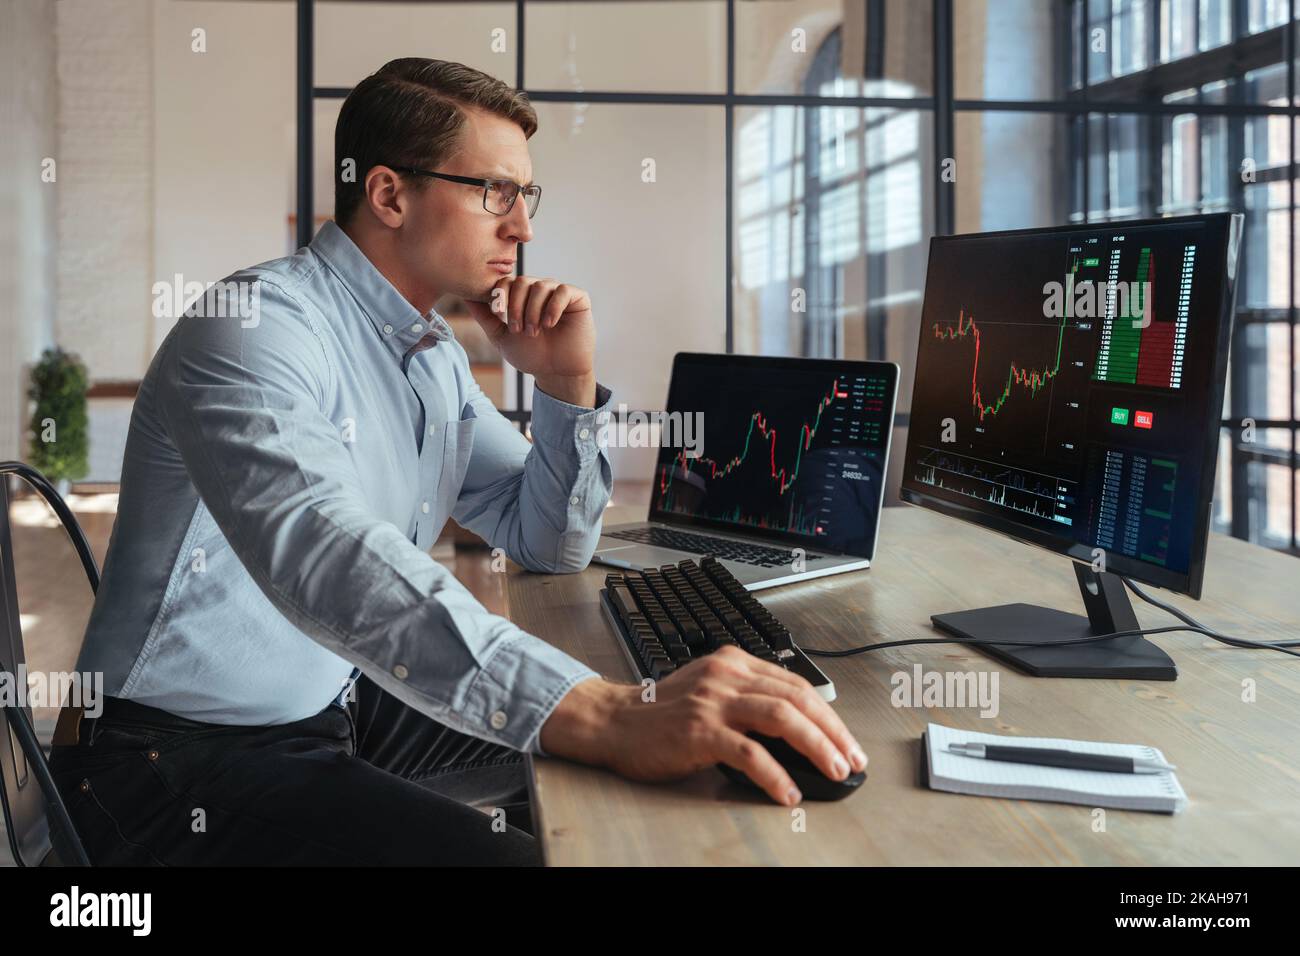 Vue latérale du broker crypto assis à la table du bureau, analyse du marché, regardant l'écran d'un ordinateur personnel avec un diagramme de chandeliers, touchant le menton avec la main, pensant, portant une chemise et des lunettes Banque D'Images